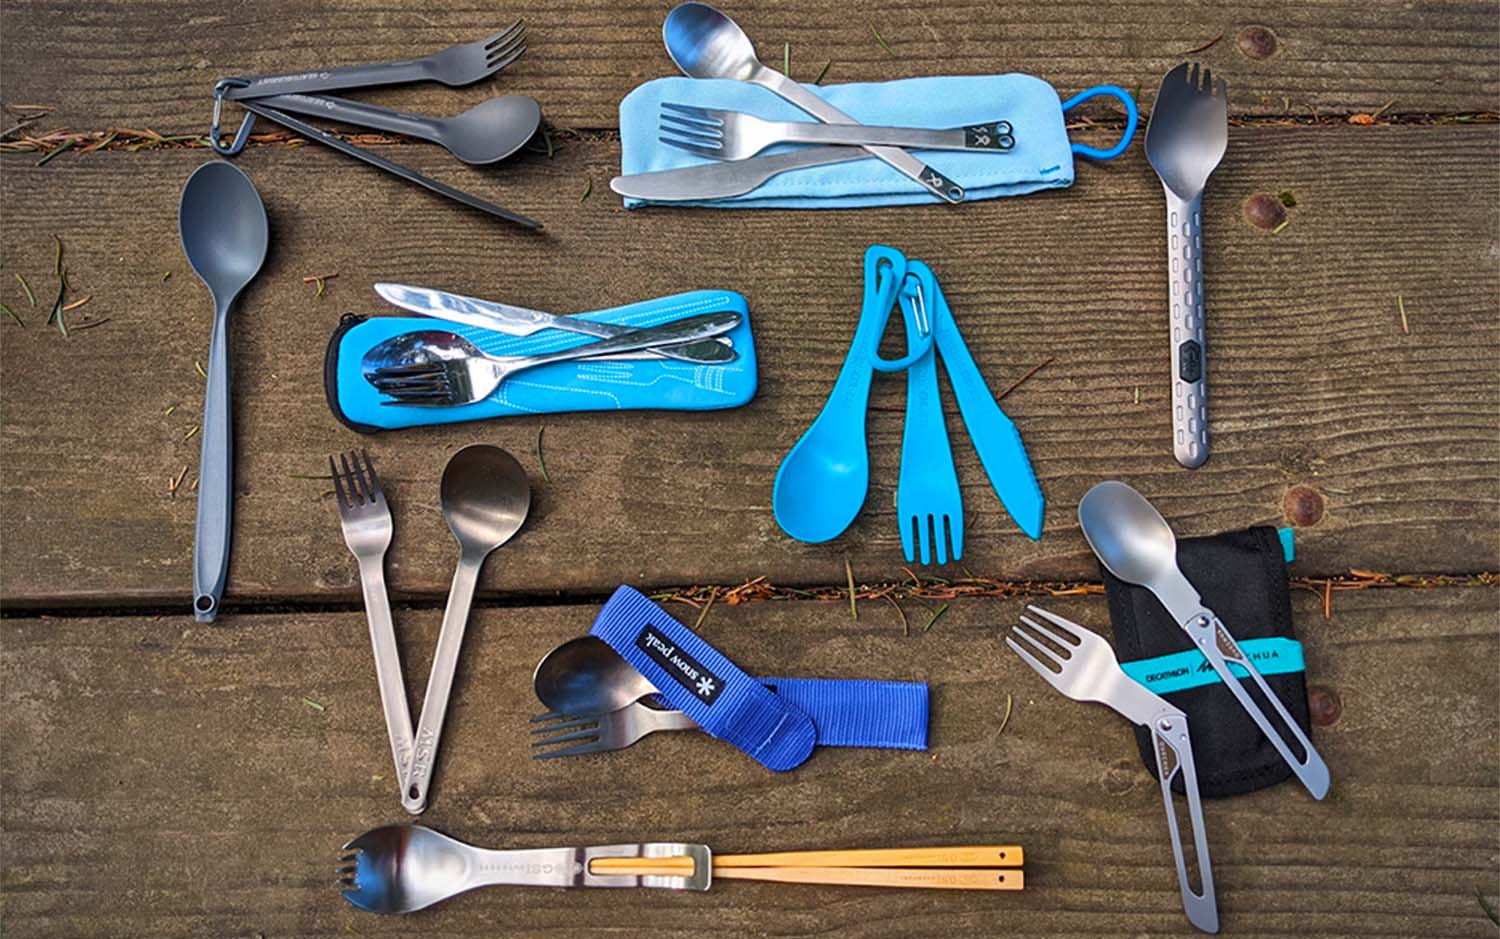 The author put 13 camping utensils through rigorous testing.